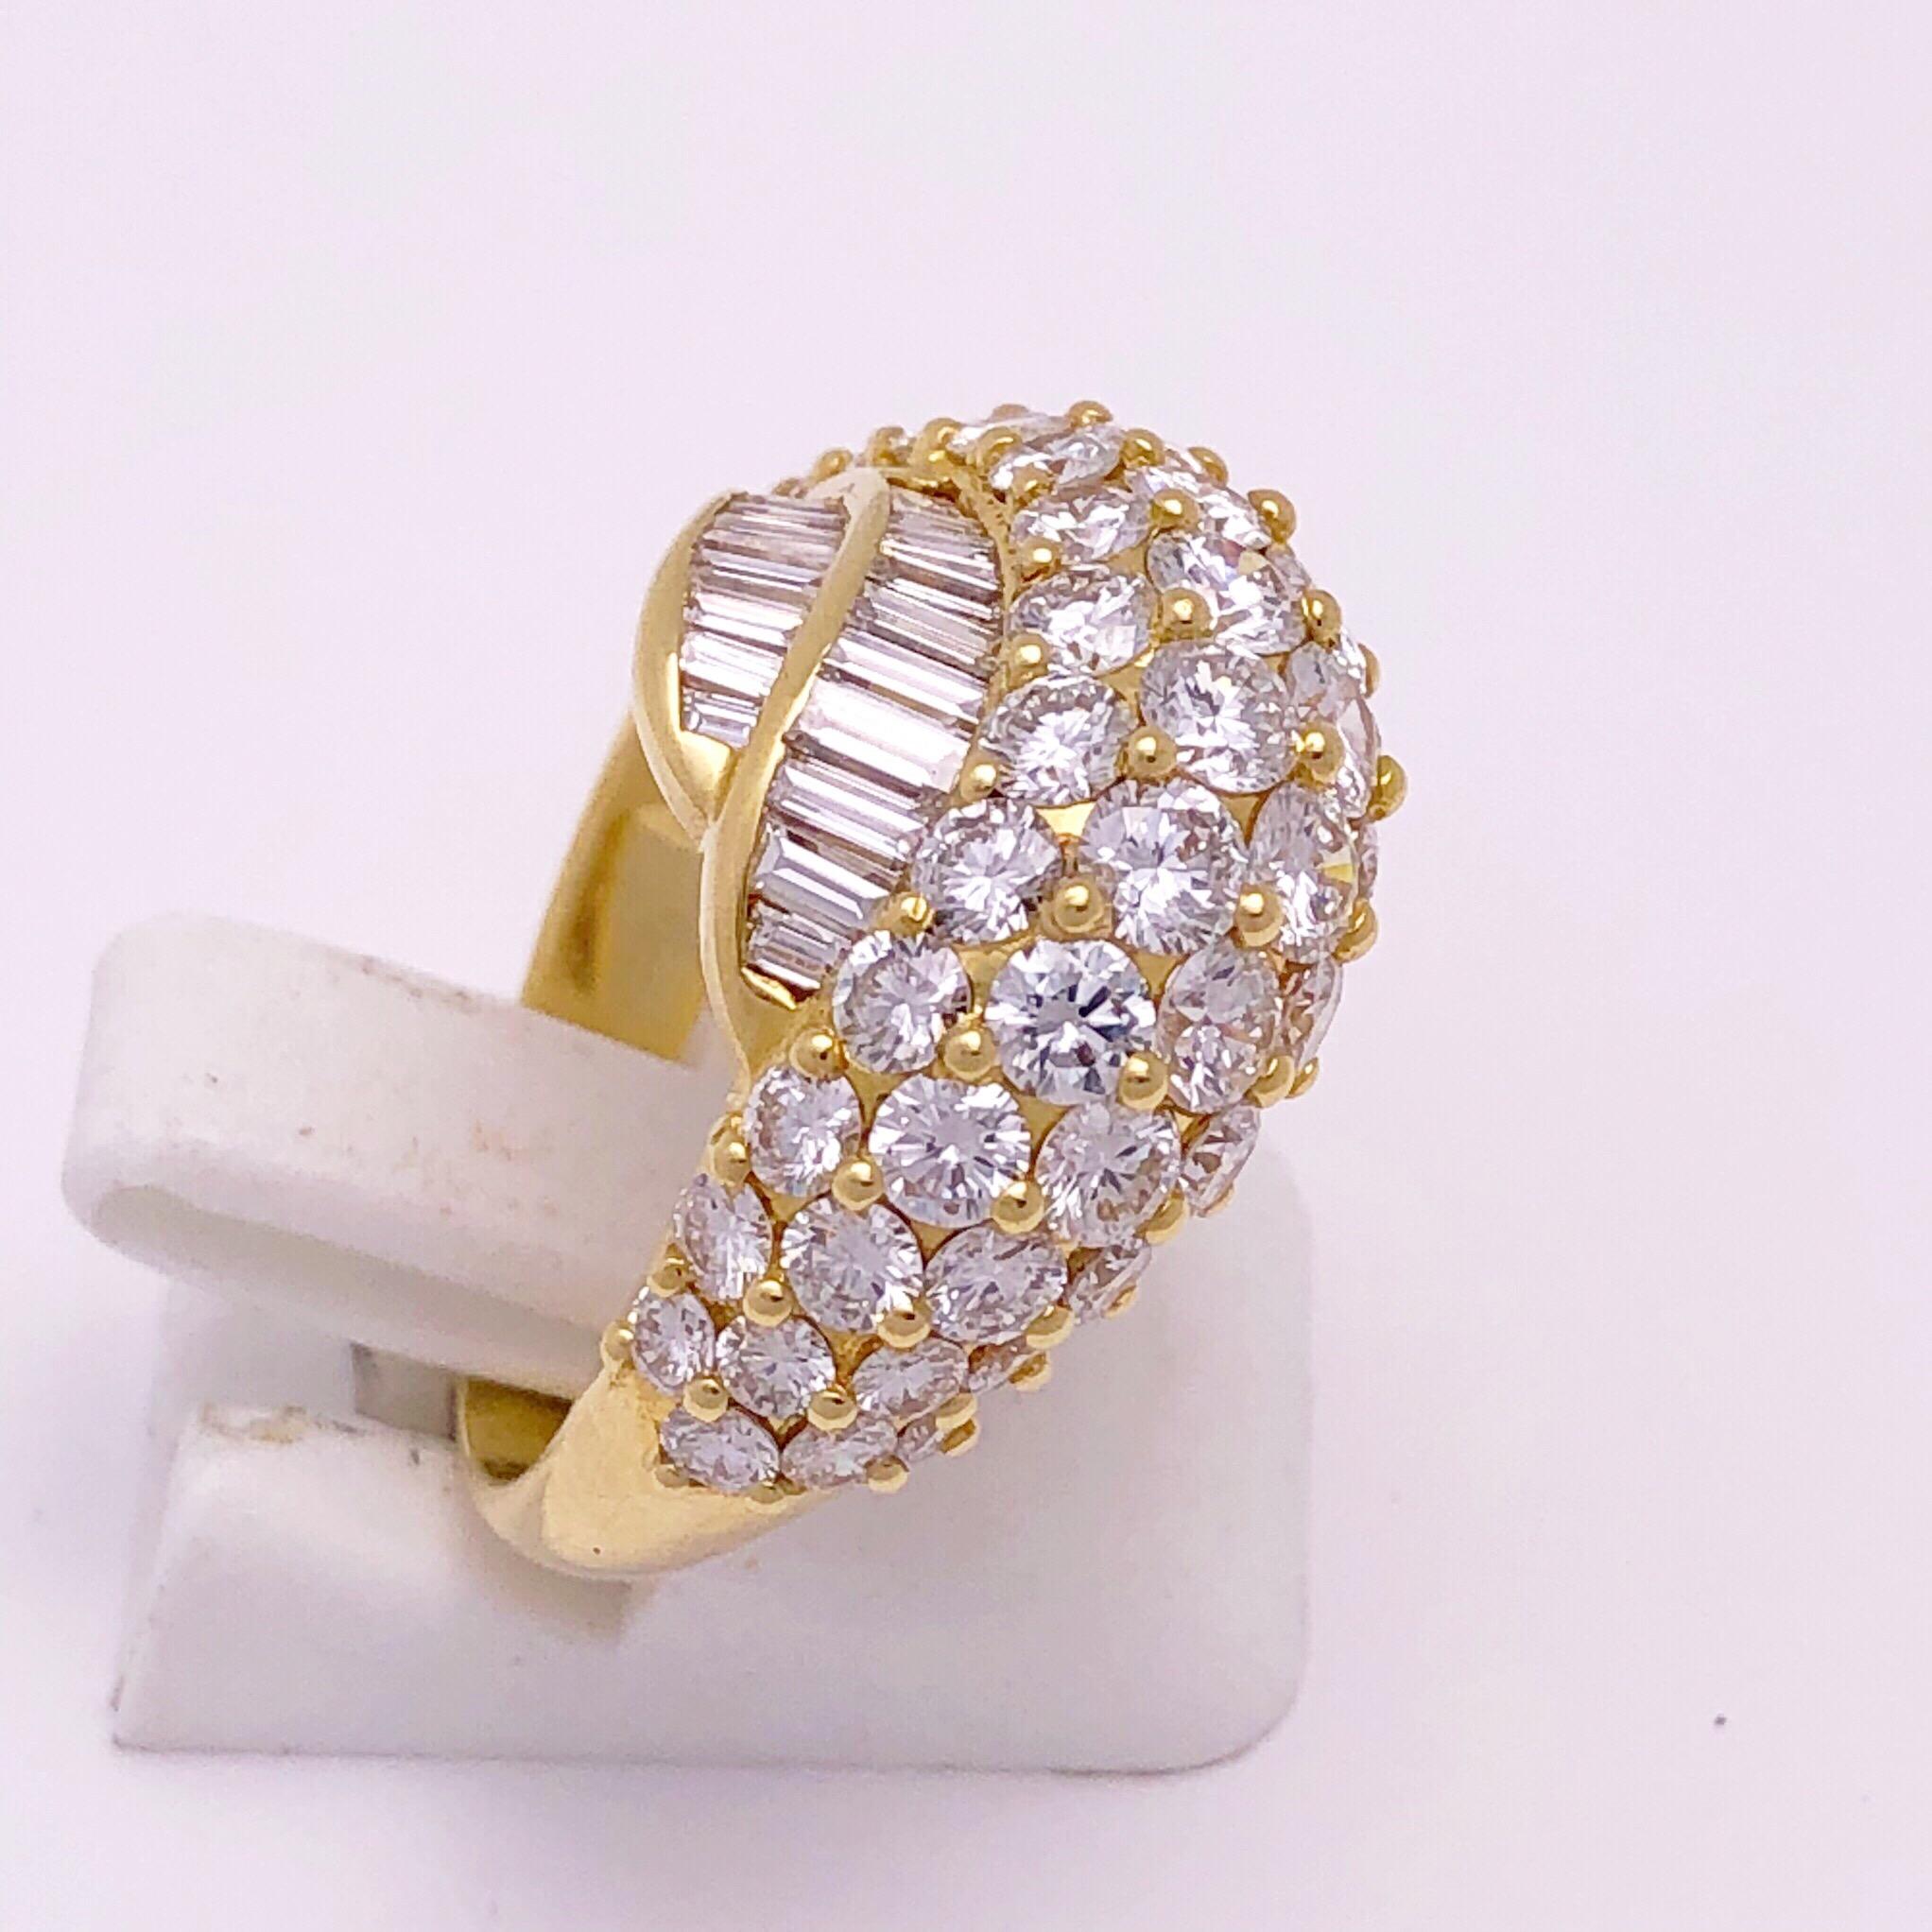 Cette magnifique bague à diamants en or jaune 18 KT est fabriquée à la main par le célèbre designer italien Picchiotti.
Cette bague a été méticuleusement sertie de quatre rangs de diamants ronds de taille brillant pesant 3,25 carats et de deux rangs